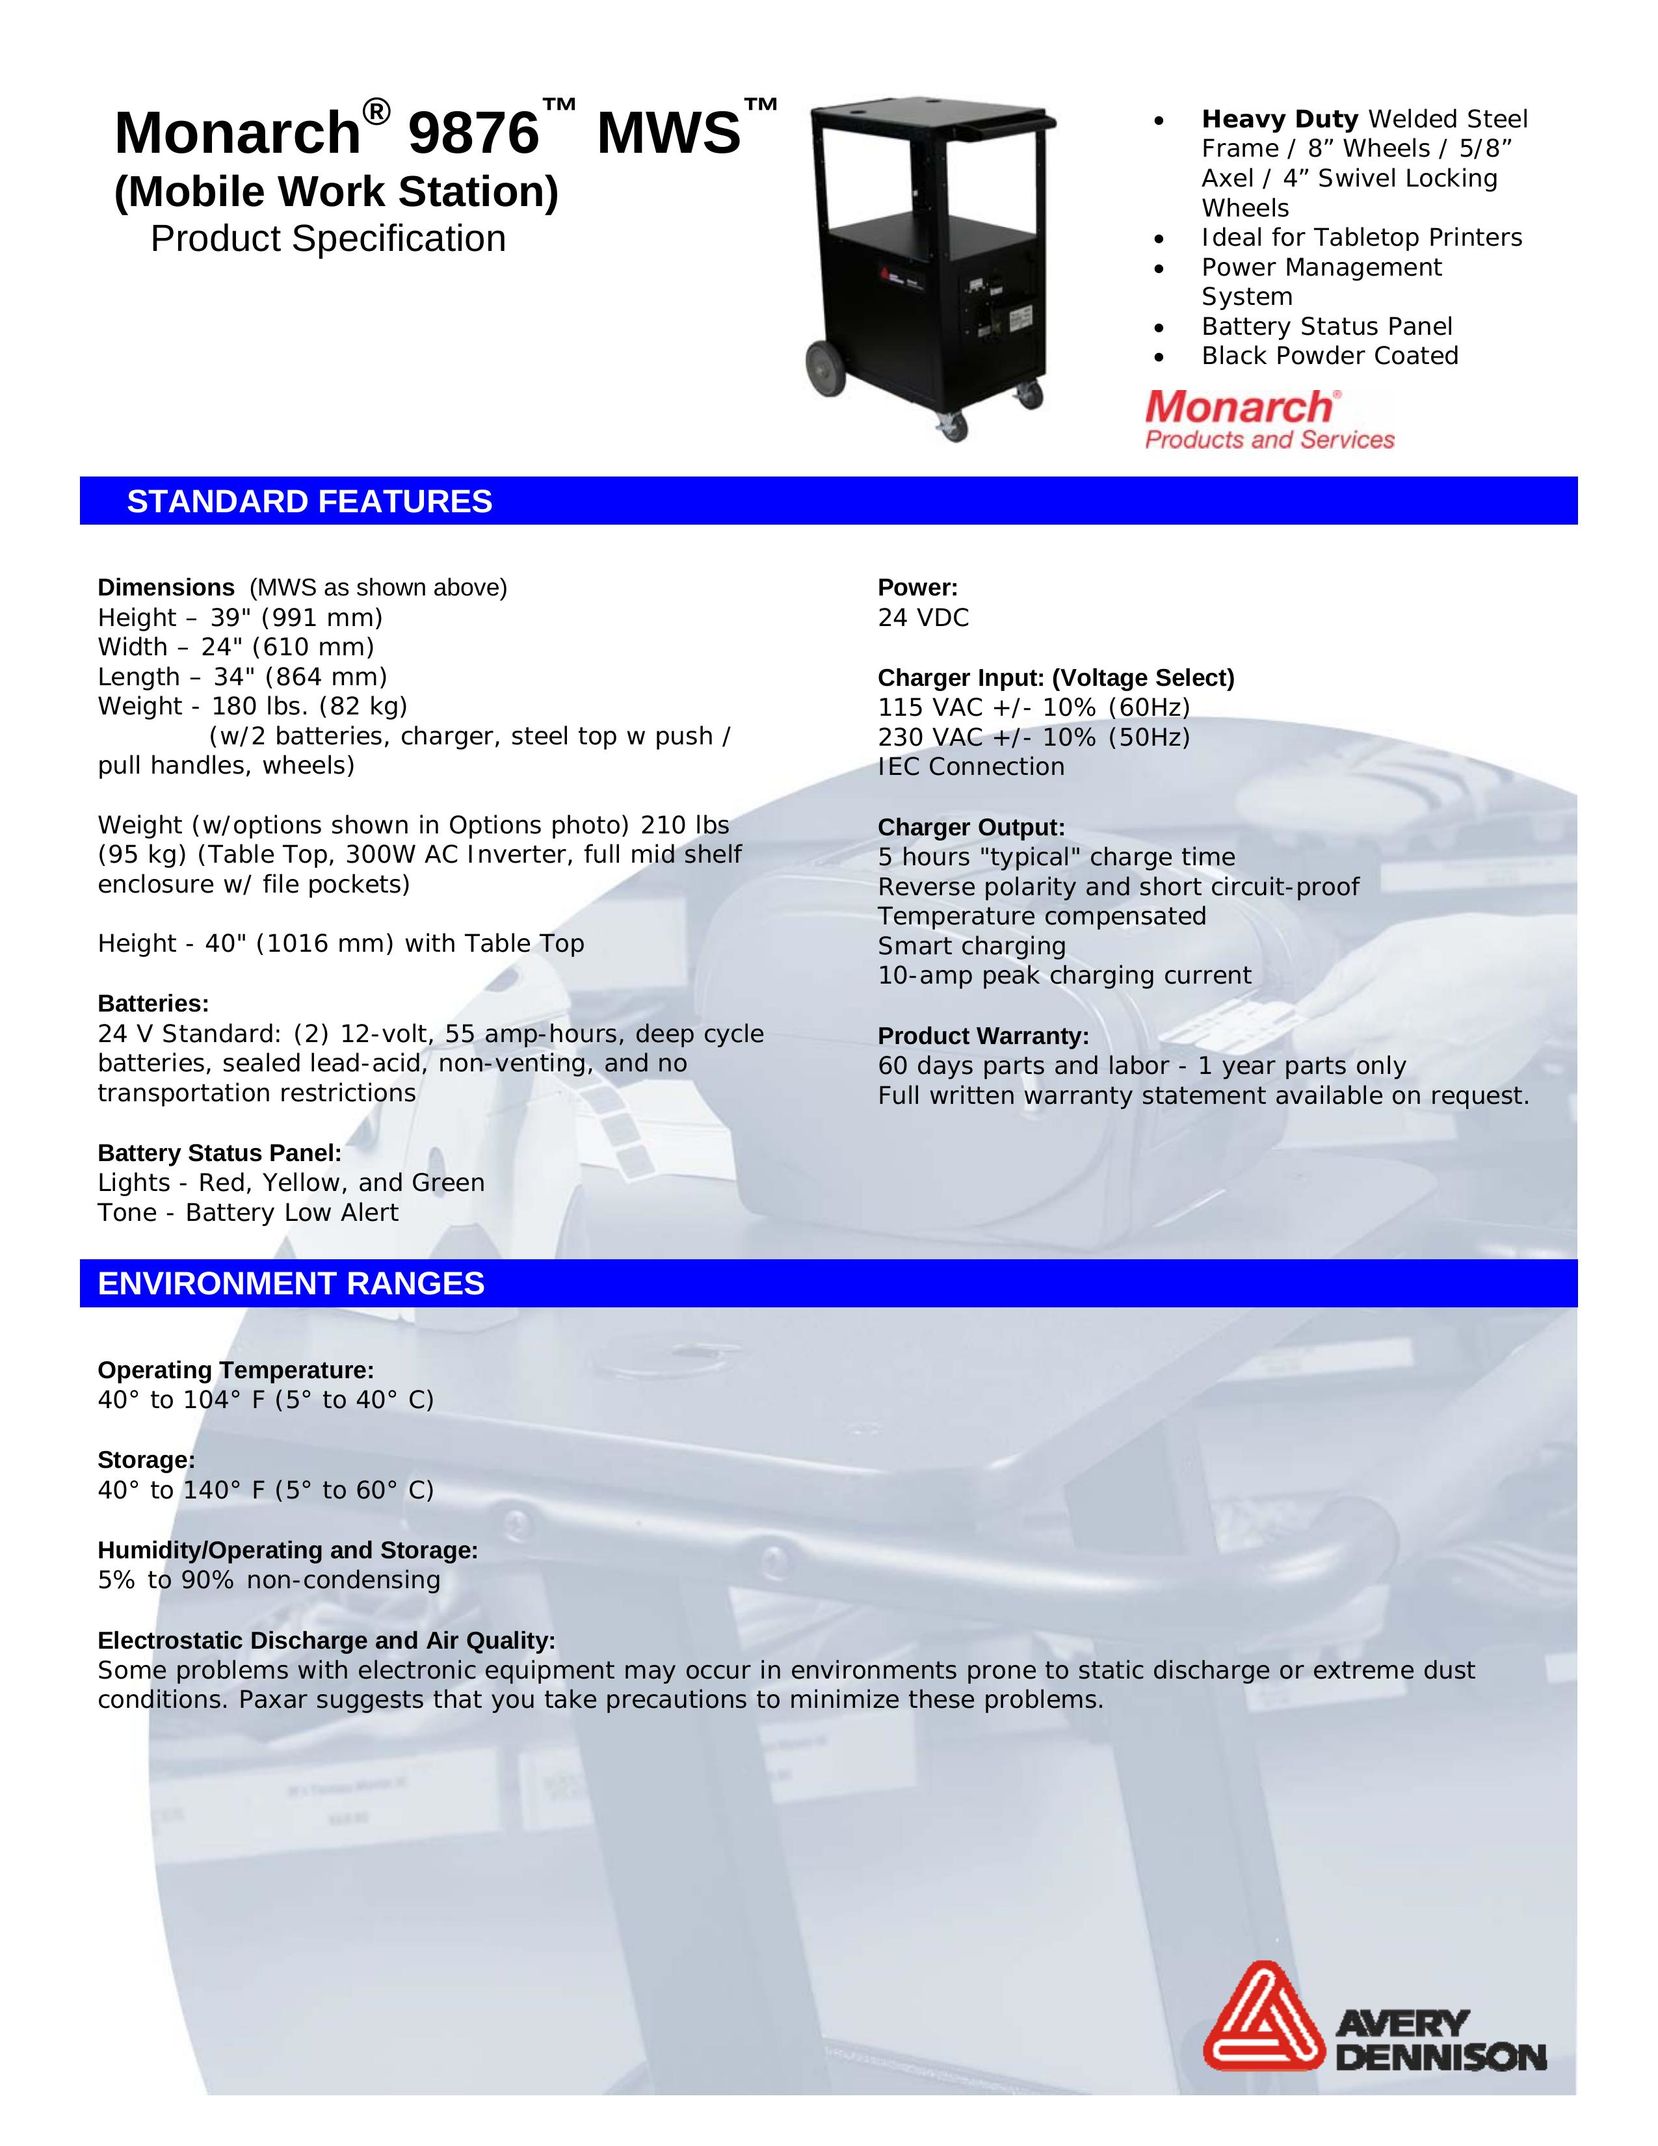 Monarch 9876 Printer User Manual